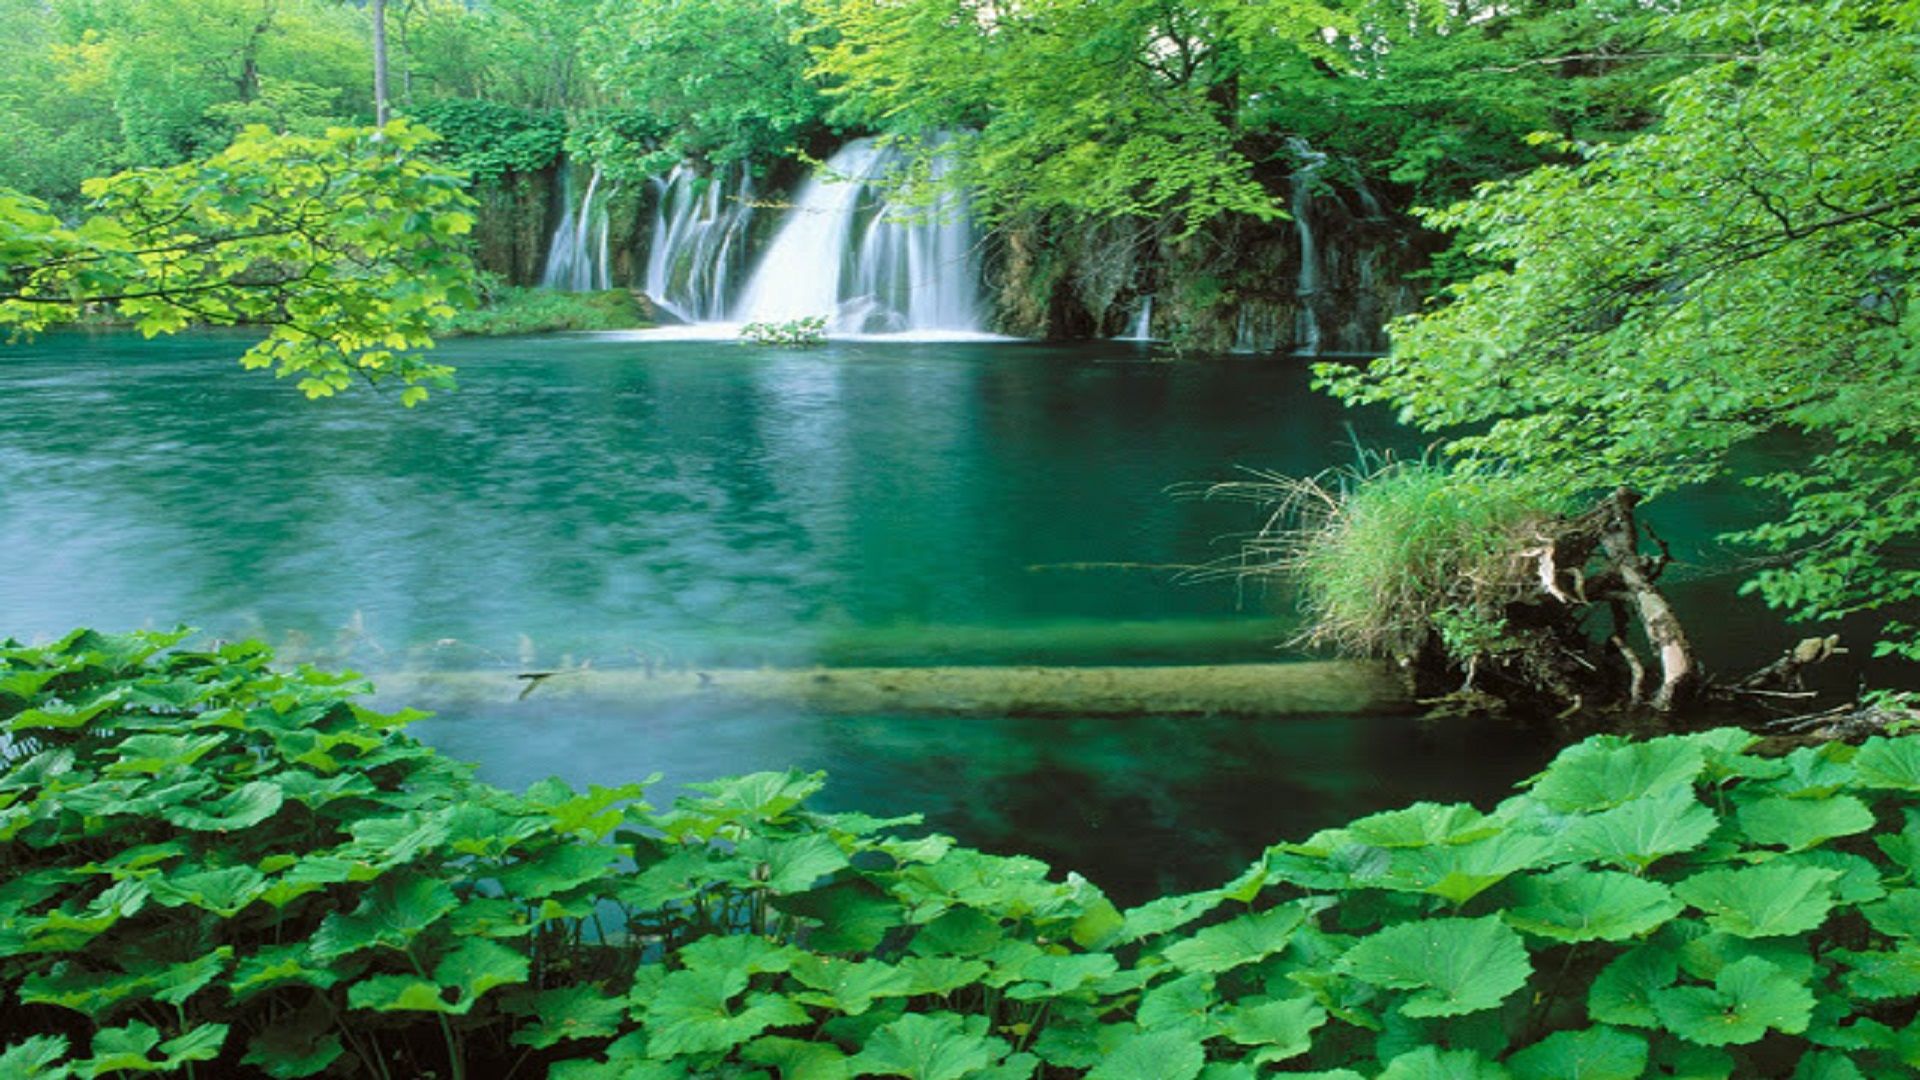 عکس پروفایل اعجاب برانگیز از درختان سبز پربرگ اطراف آبشار زلال